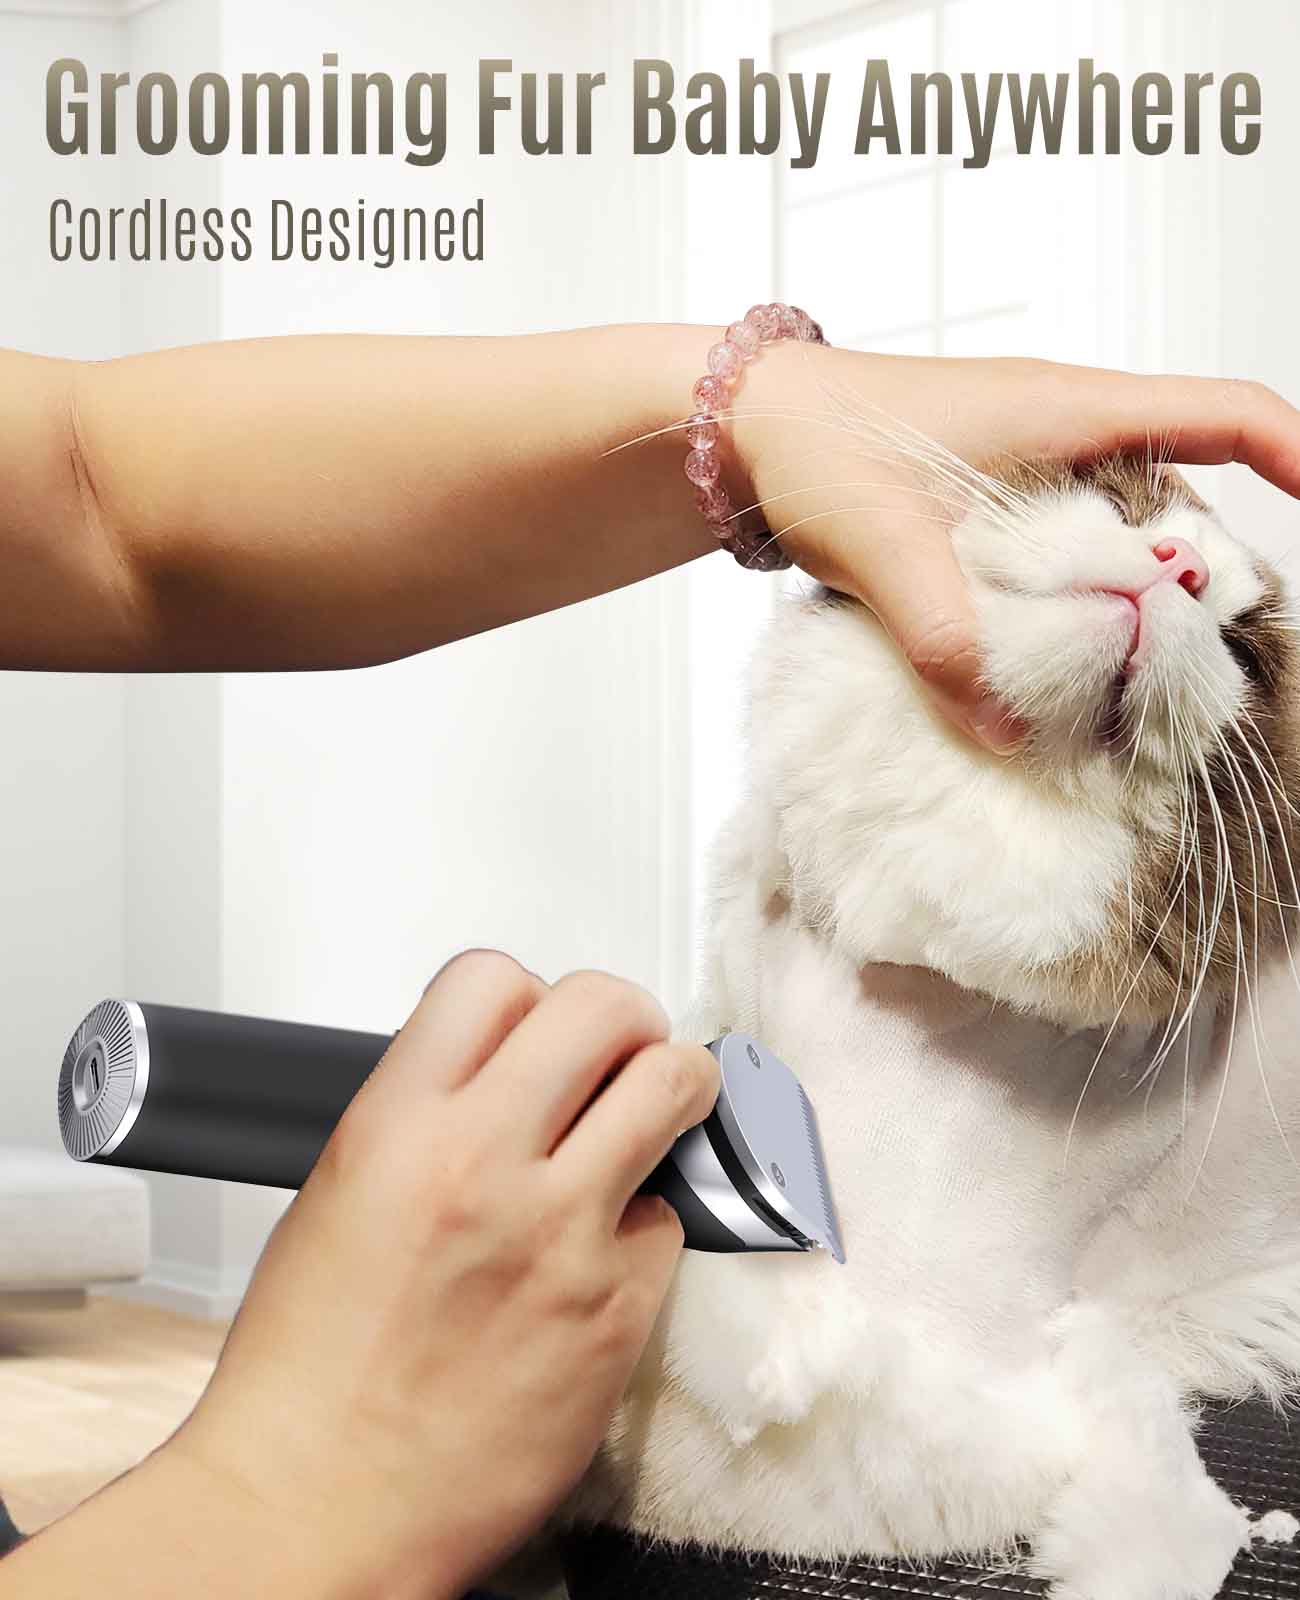 
                  
                    Tosatrici per gatti Oneisall, tosatrici per toelettatura per gatti a basso rumore per capelli lunghi arruffati-RK-034
                  
                